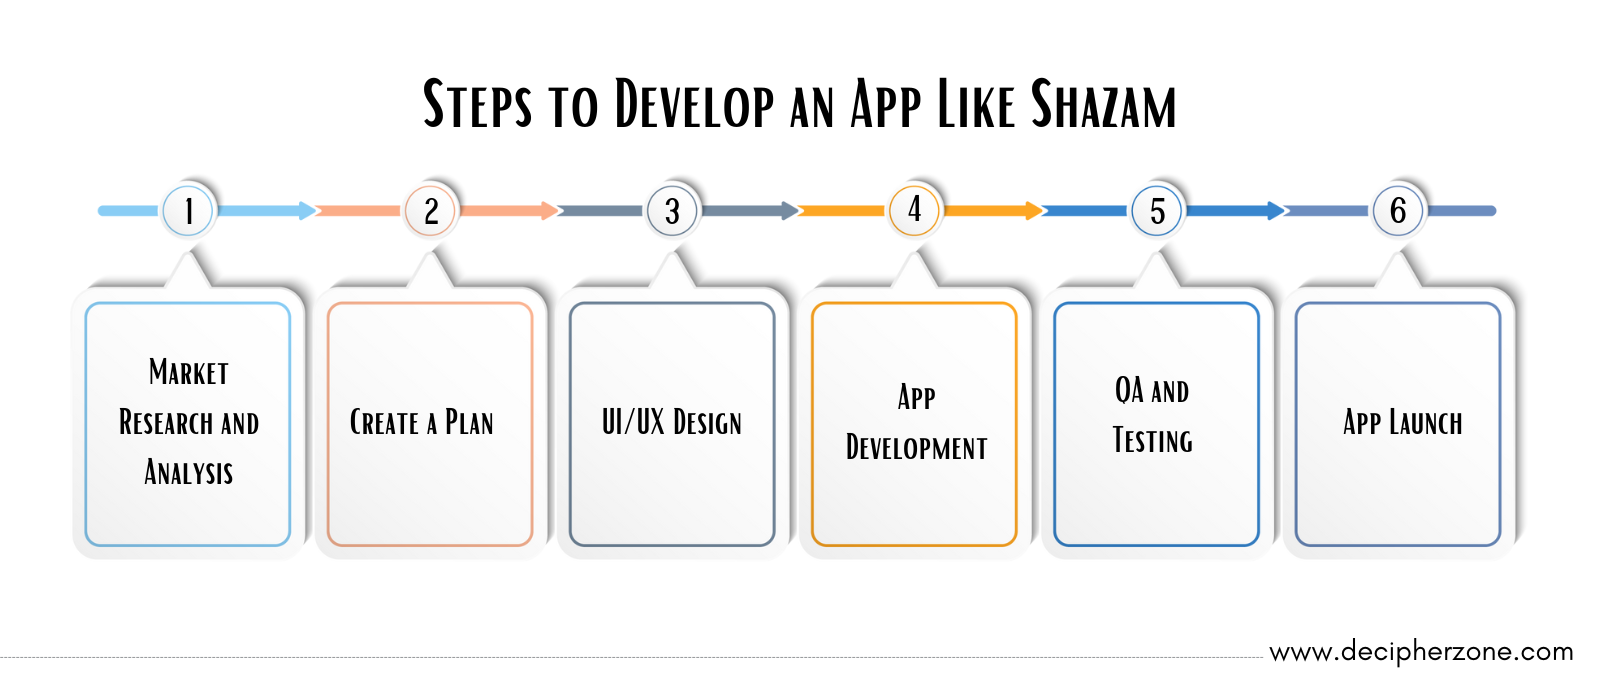 Steps to Develop an App Like Shazam